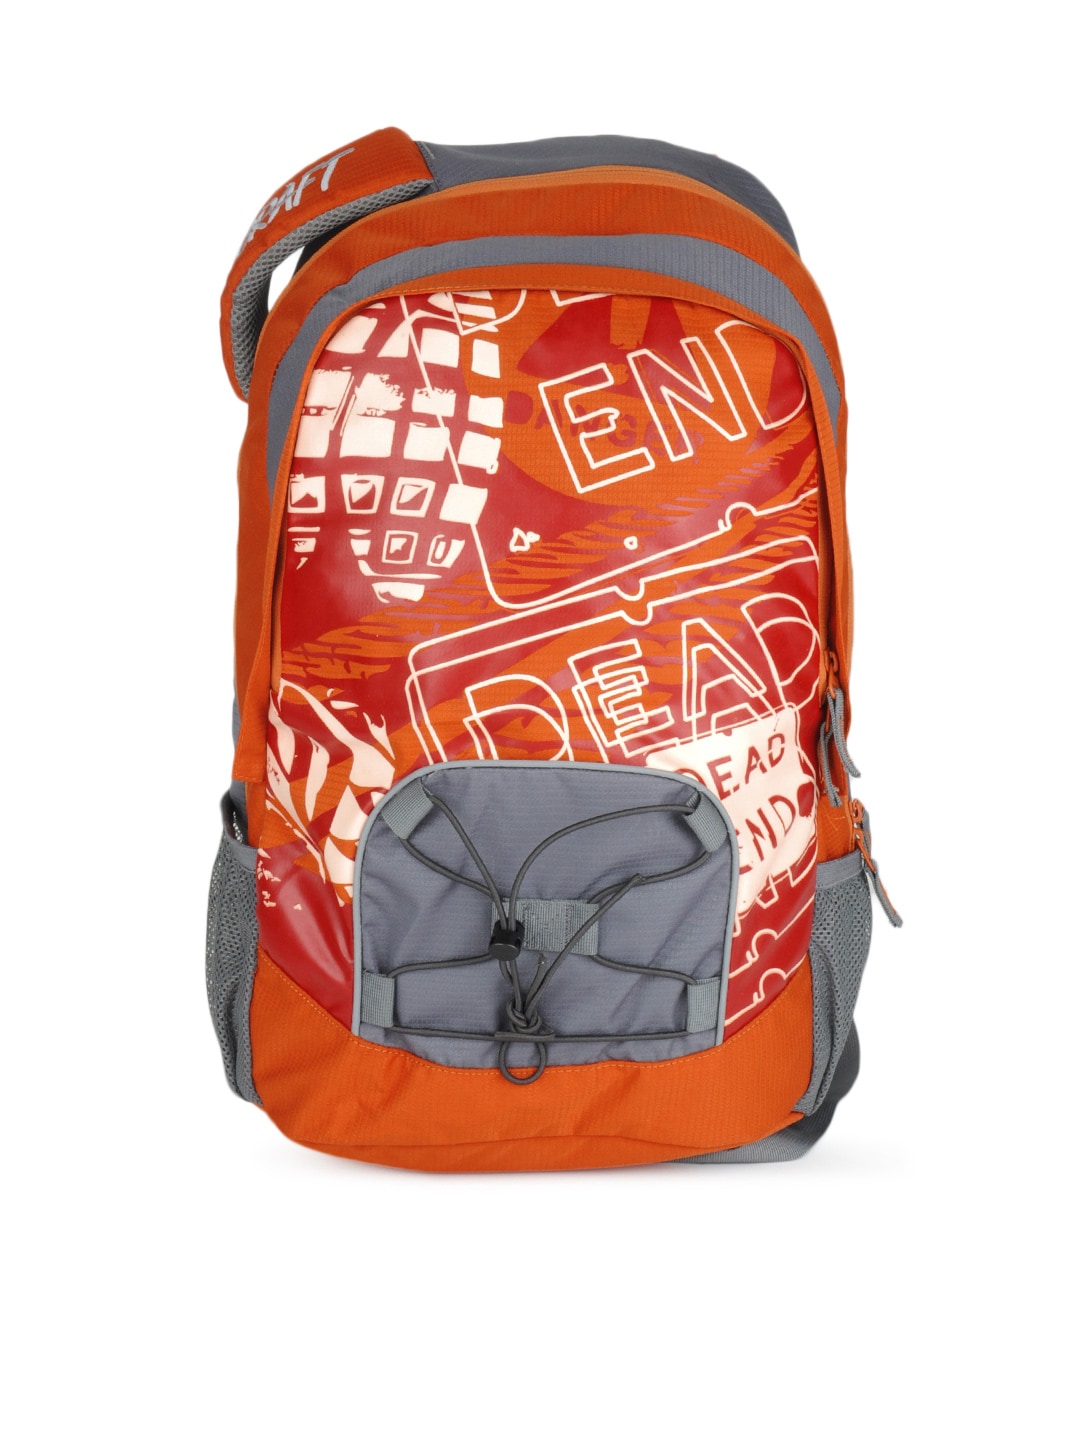 Wildcraft Unisex Orange Printed Laptop Backpack